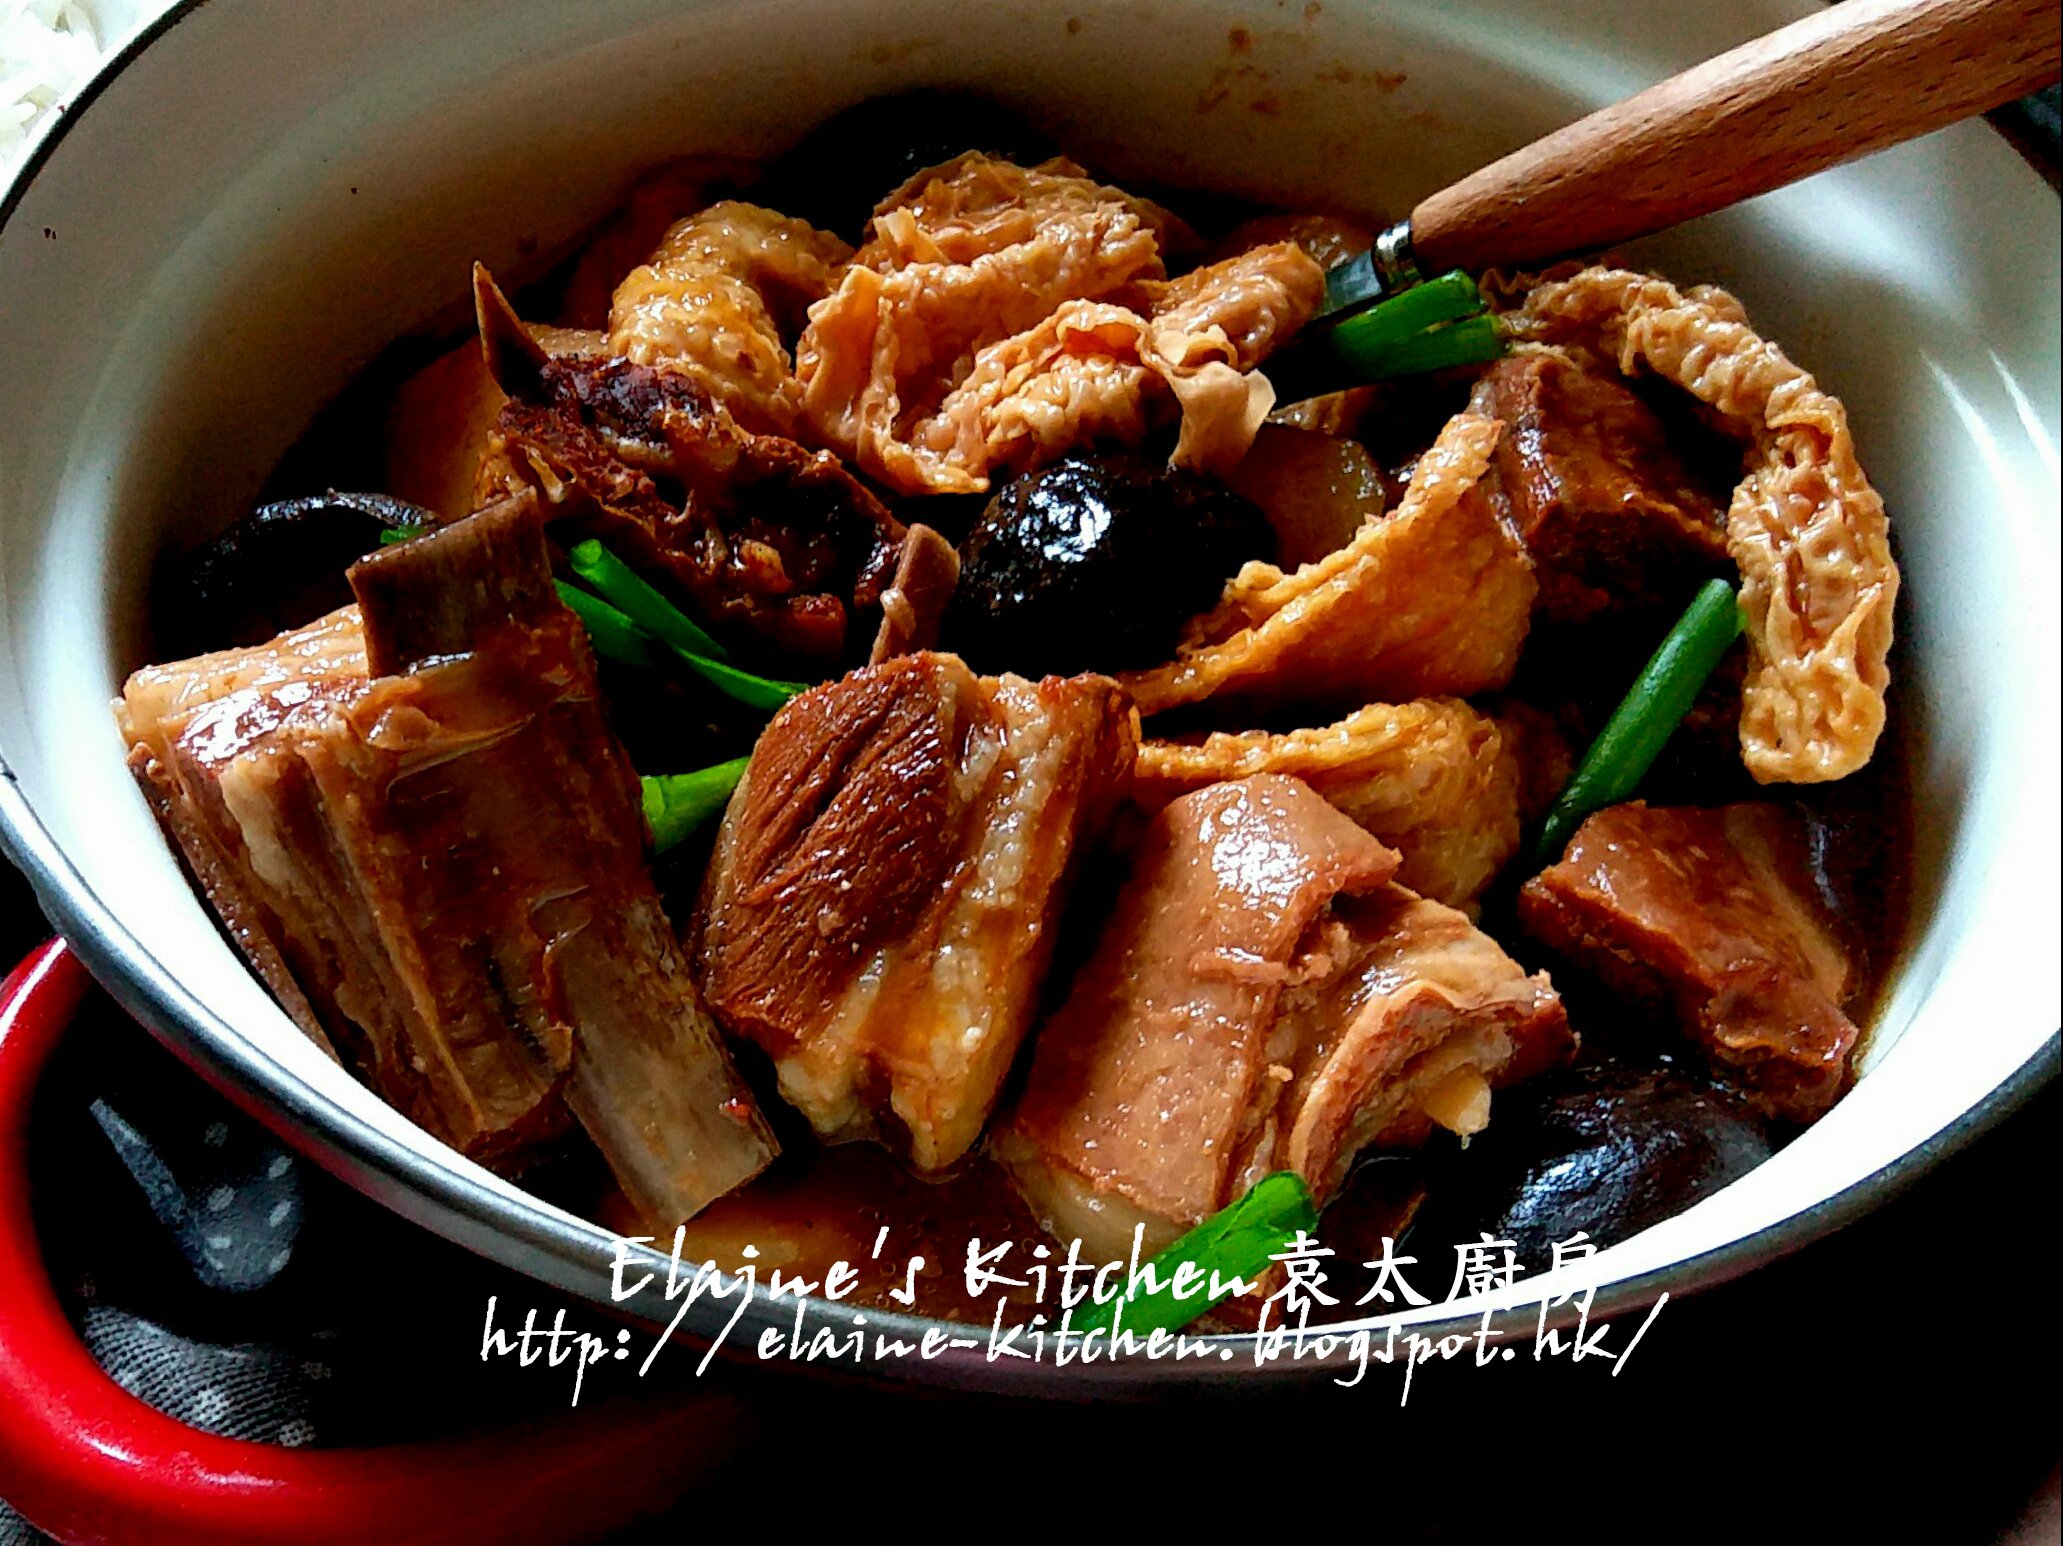 冬至料理 - 《枝竹羊腩煲》食譜、做法 | 安彥料理的Cook1Cook食譜分享